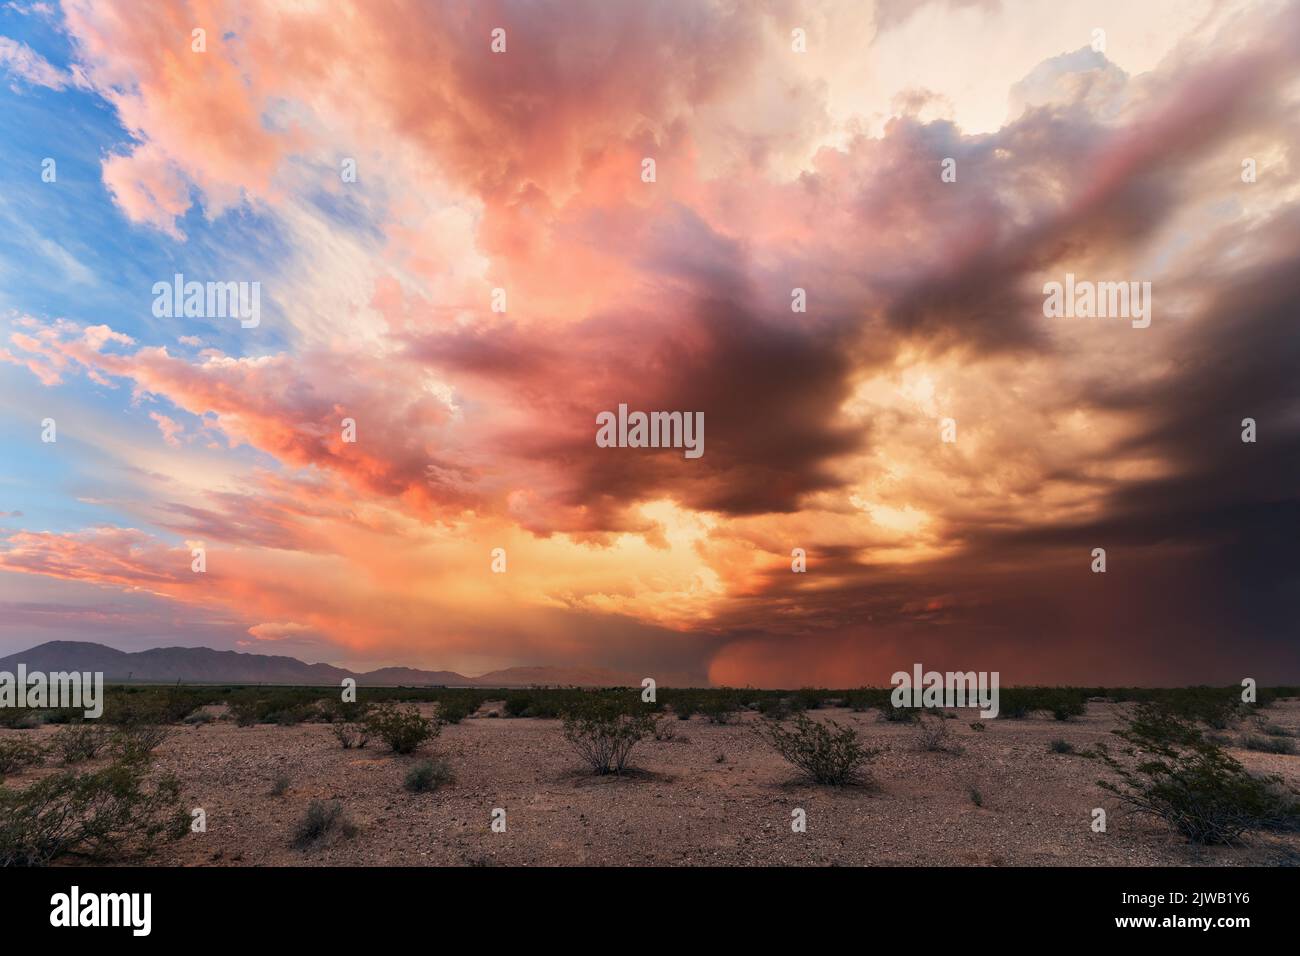 Puesta de sol de la temporada monzónica y tormenta de polvo en el desierto de Arizona Foto de stock